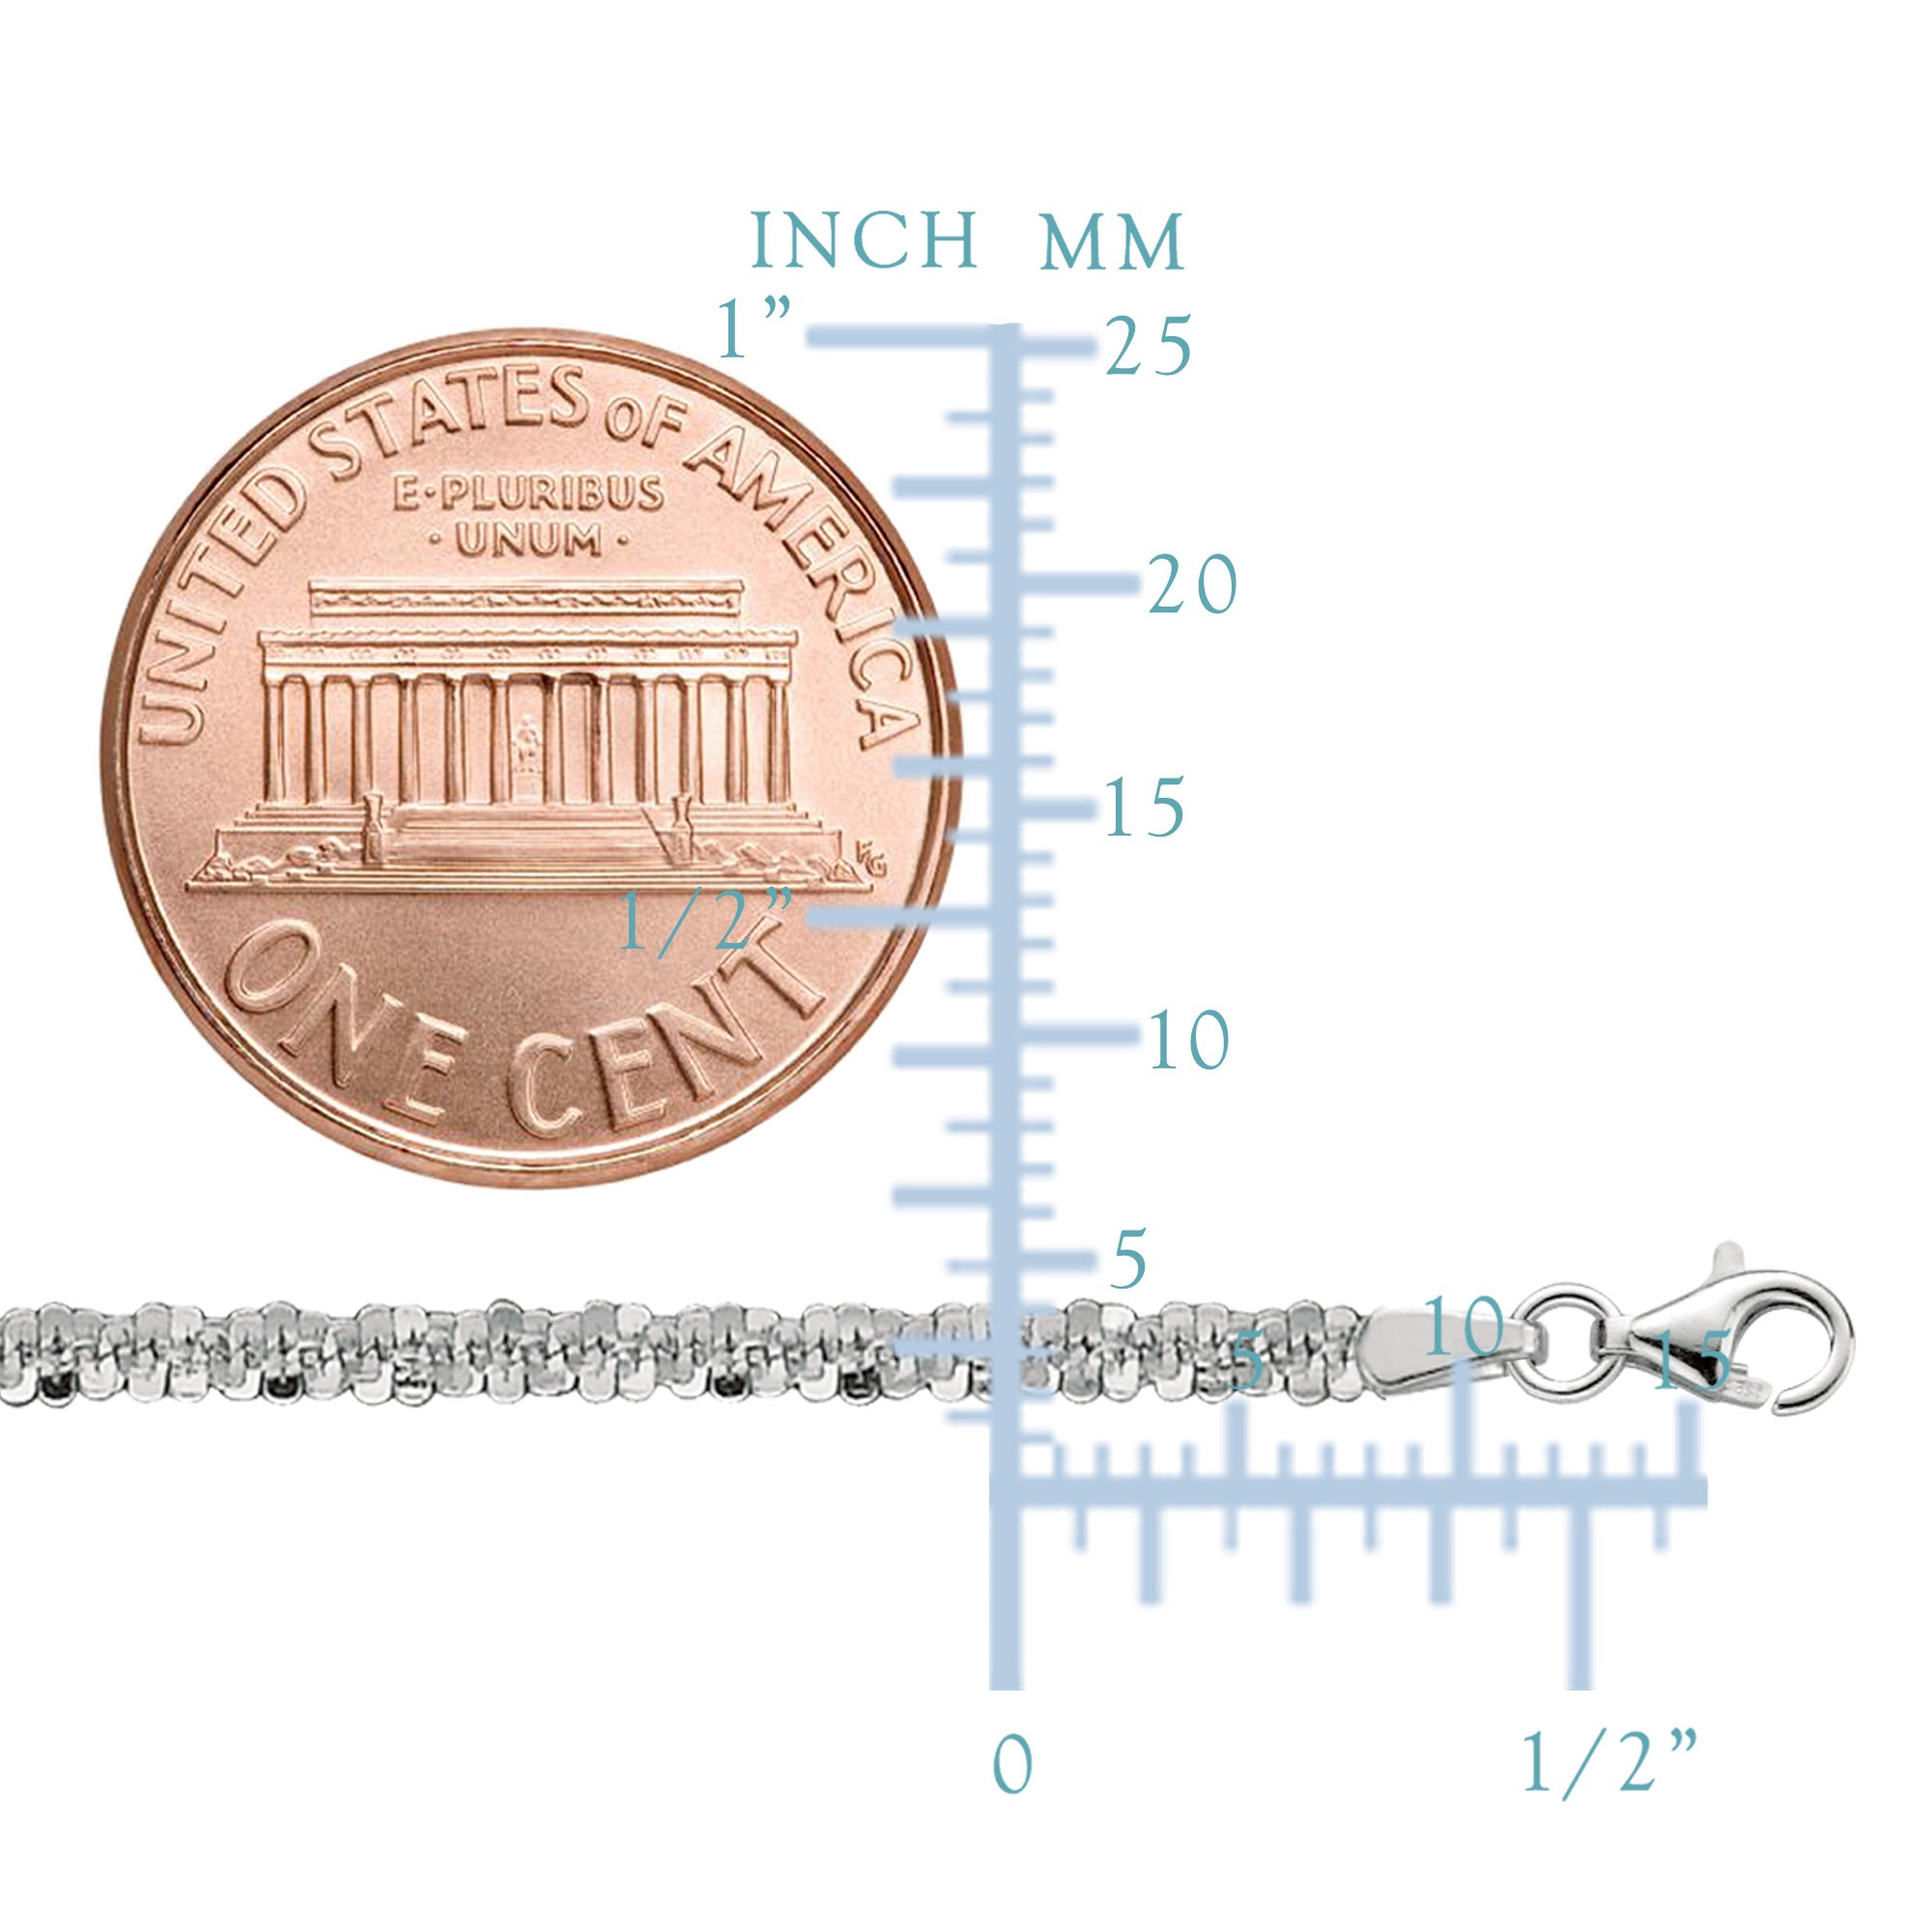 Collier chaîne scintillante en argent sterling plaqué rhodium, bijoux de créateur fins de 2,2 mm pour hommes et femmes